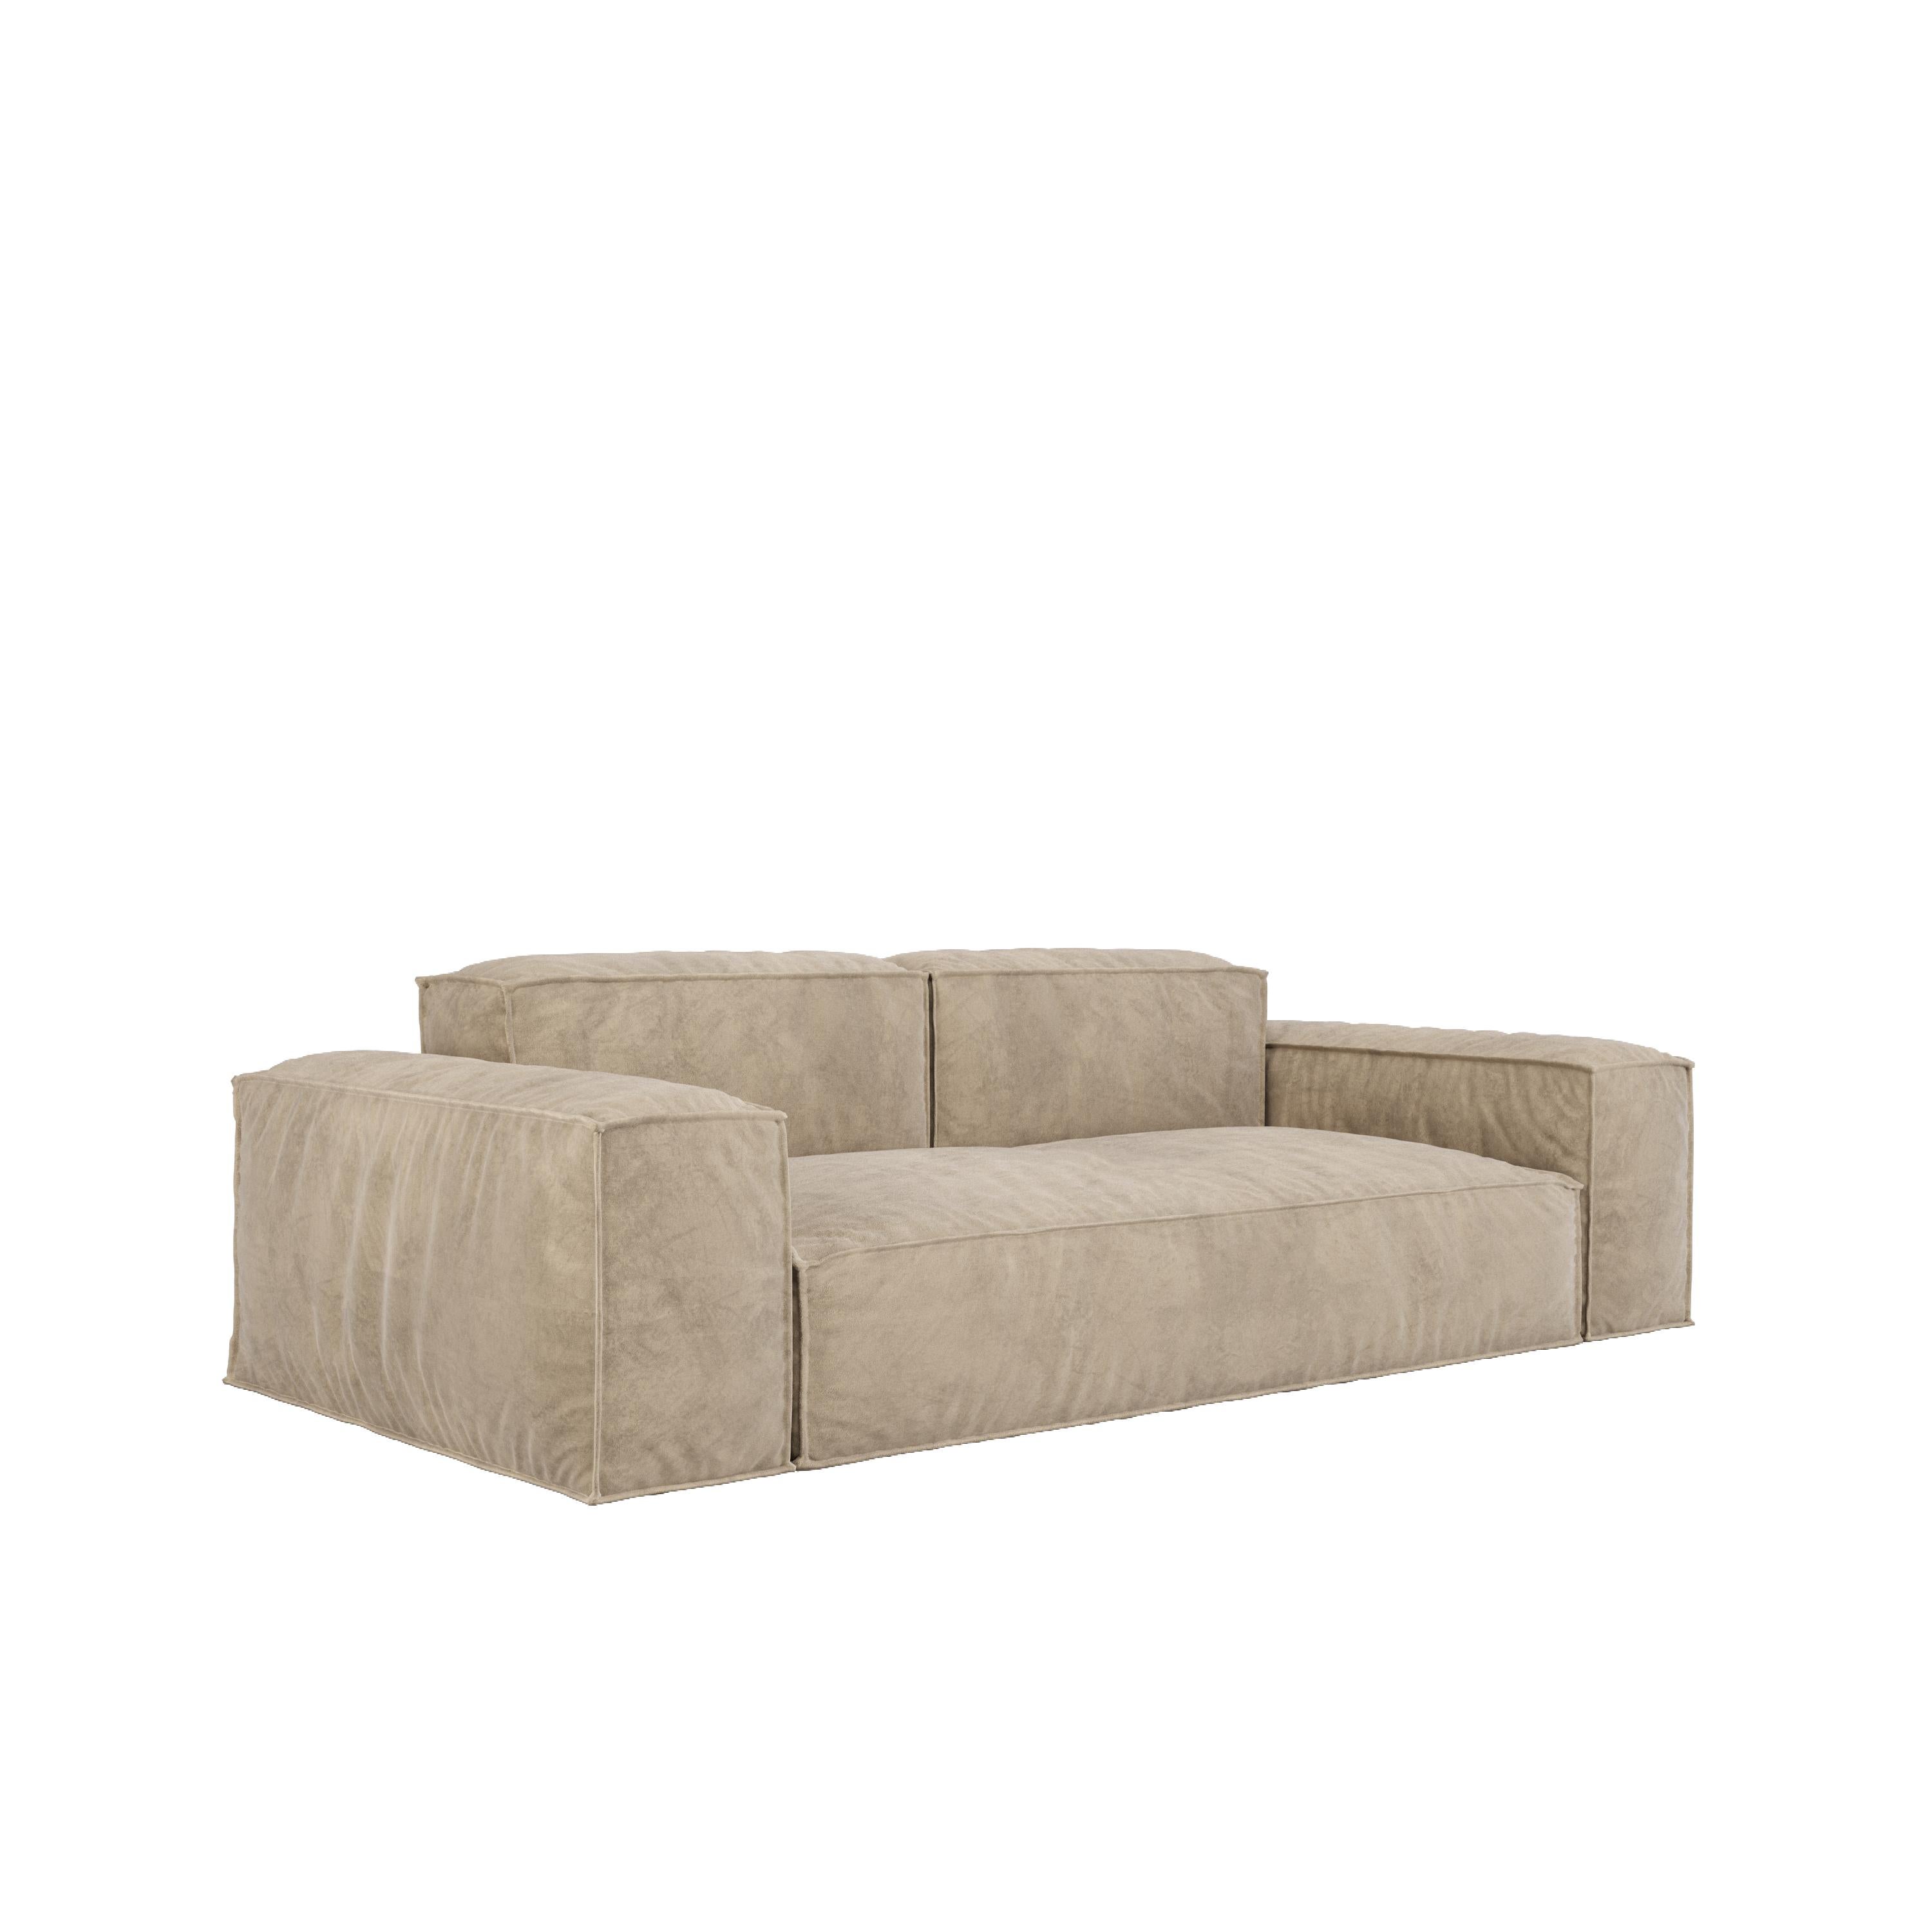 Wir stellen das CLOUD regular Sofa vor - ein Gipfel des Komforts für alle, die eine einzigartige, luxuriöse Sitzlösung suchen. Dieses vielseitige und gemütliche Sofa ist die ideale Wahl für Menschen, die ein einheitliches und anspruchsvolles Design